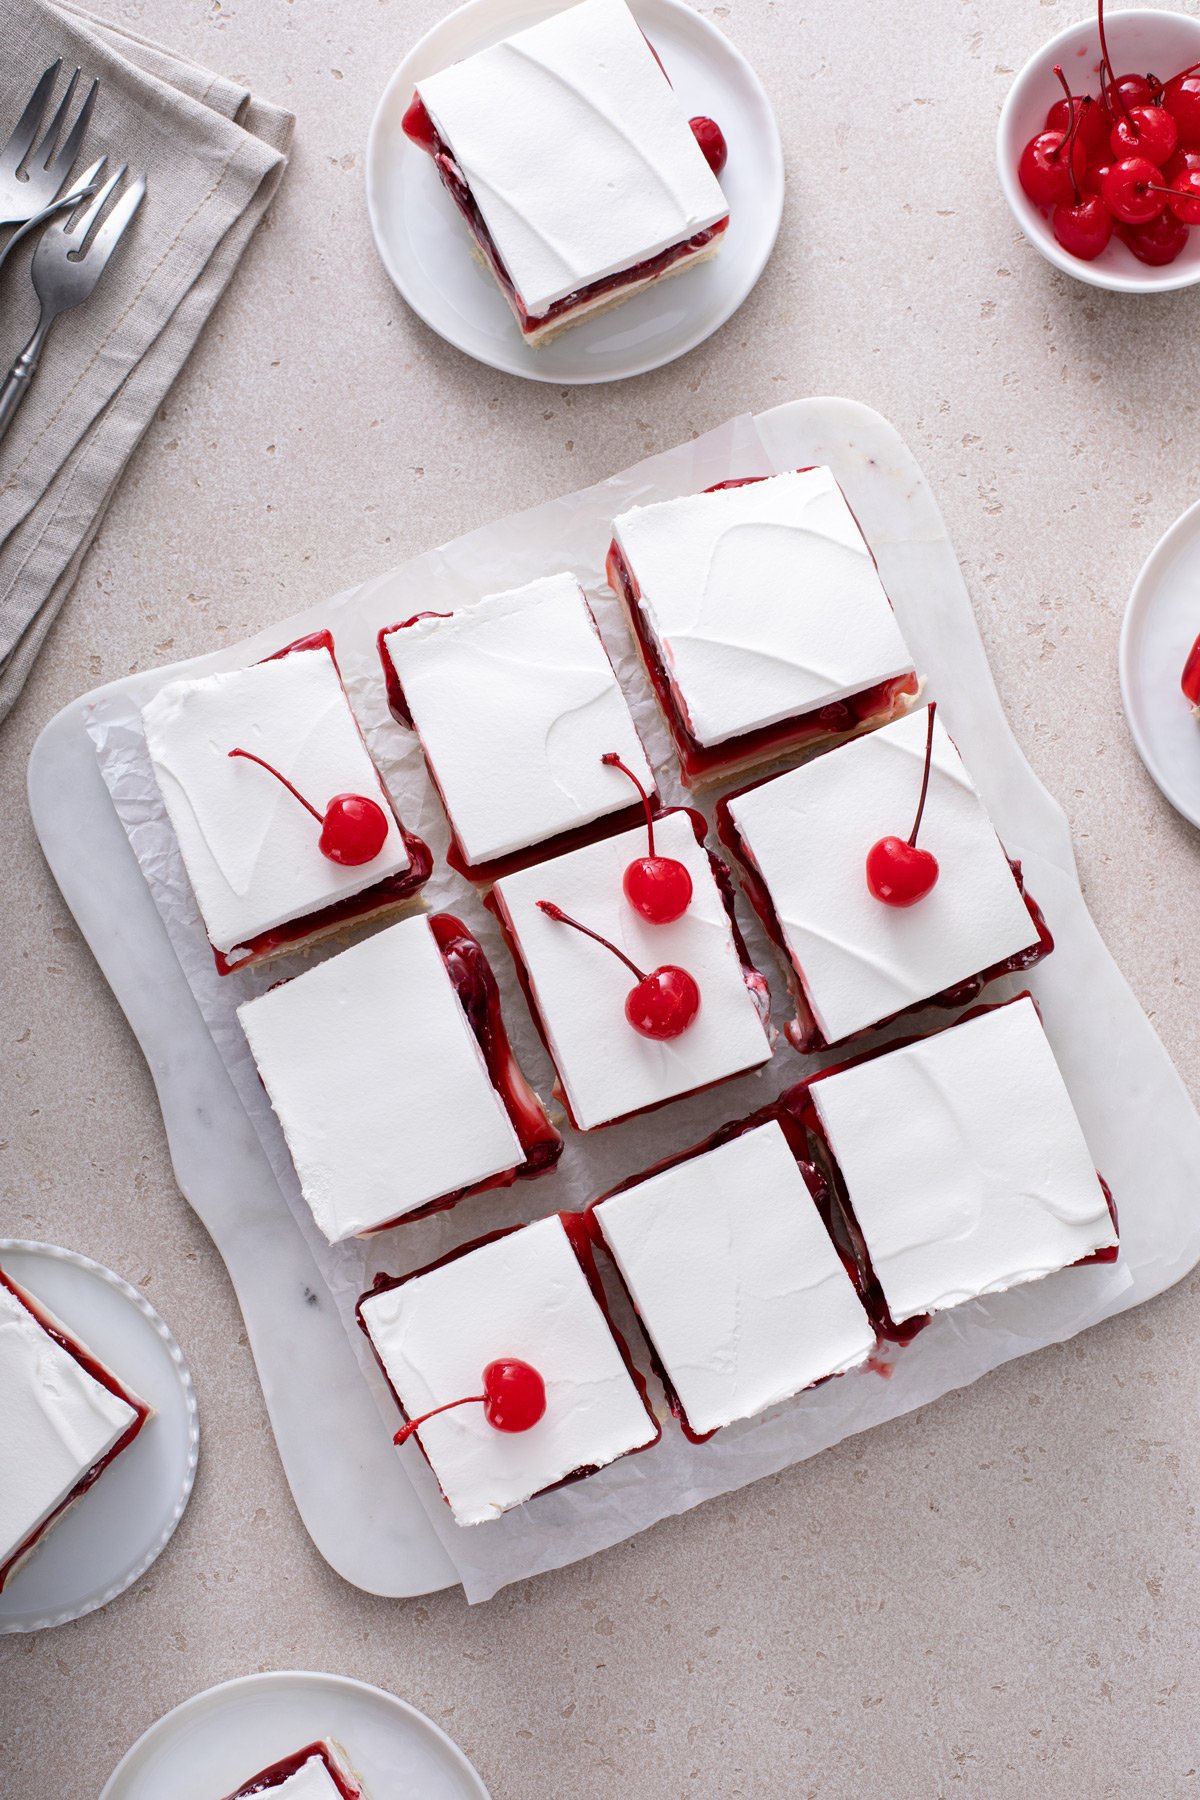 Overhead view of slices of layered cherry cheesecake dessert garnished with maraschino cherries.